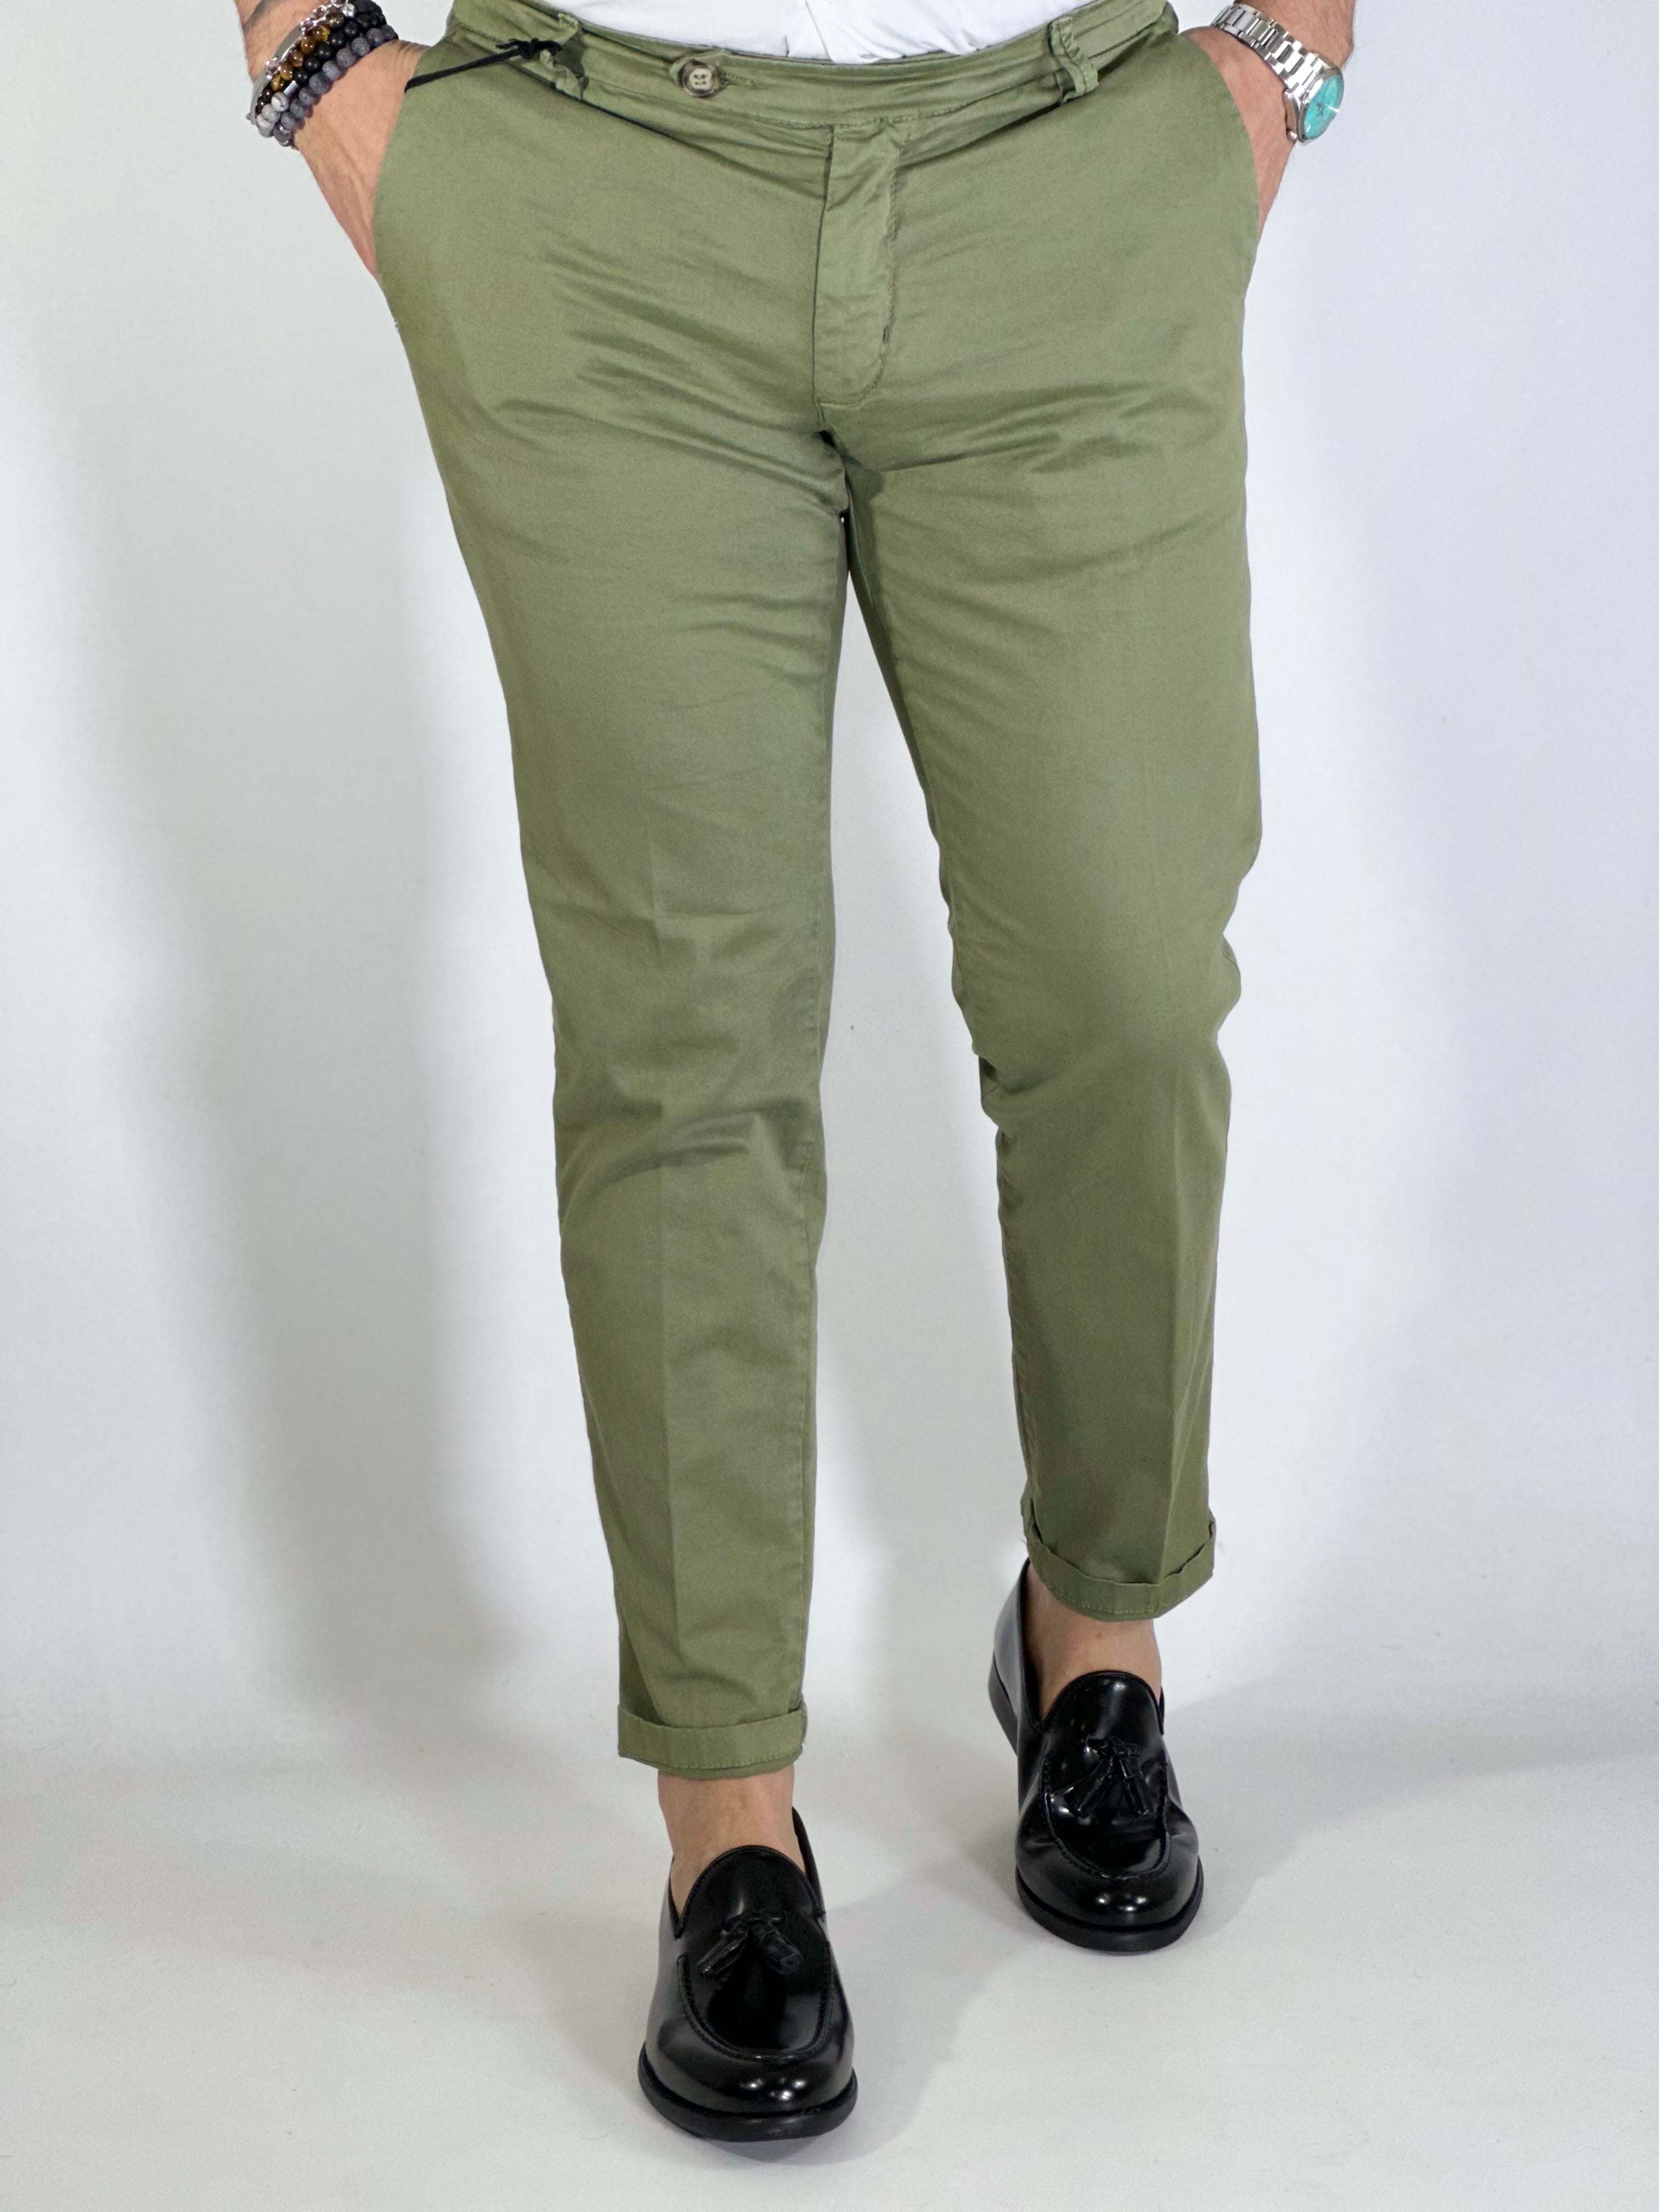 Pantalone slim capri fit verde salvia GPE300